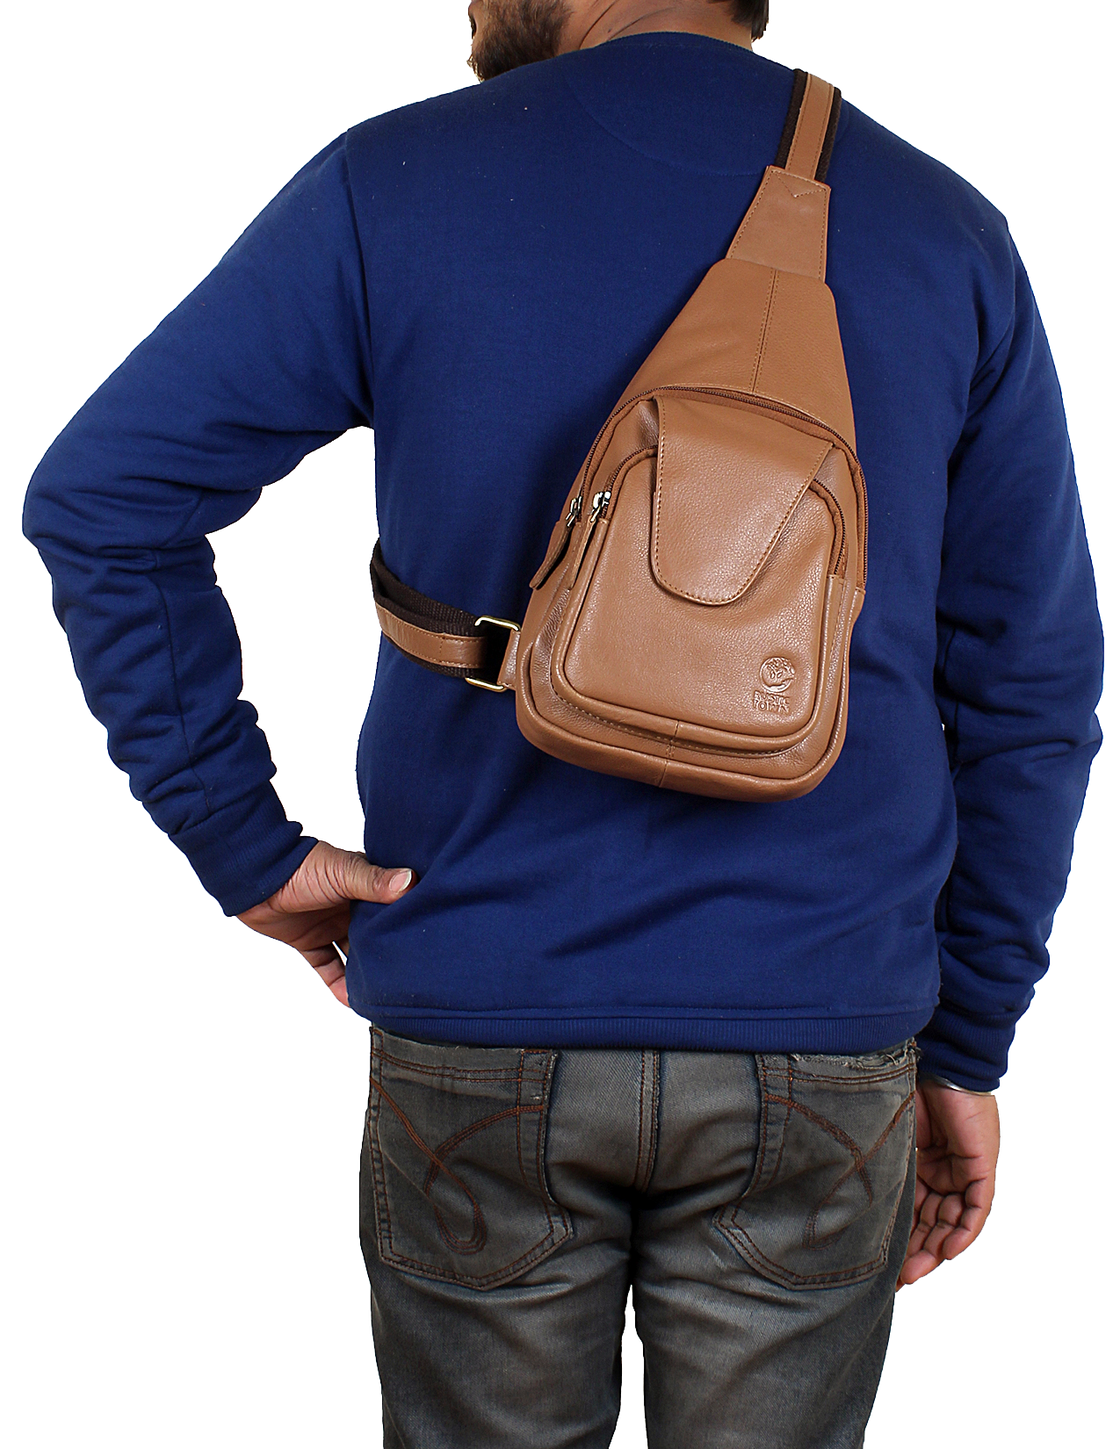 Men Women Chest Bag Genuine Leather Sling Shoulder Backpack, Waterproof Crossbody  Bag By Rustic Town (Brown)